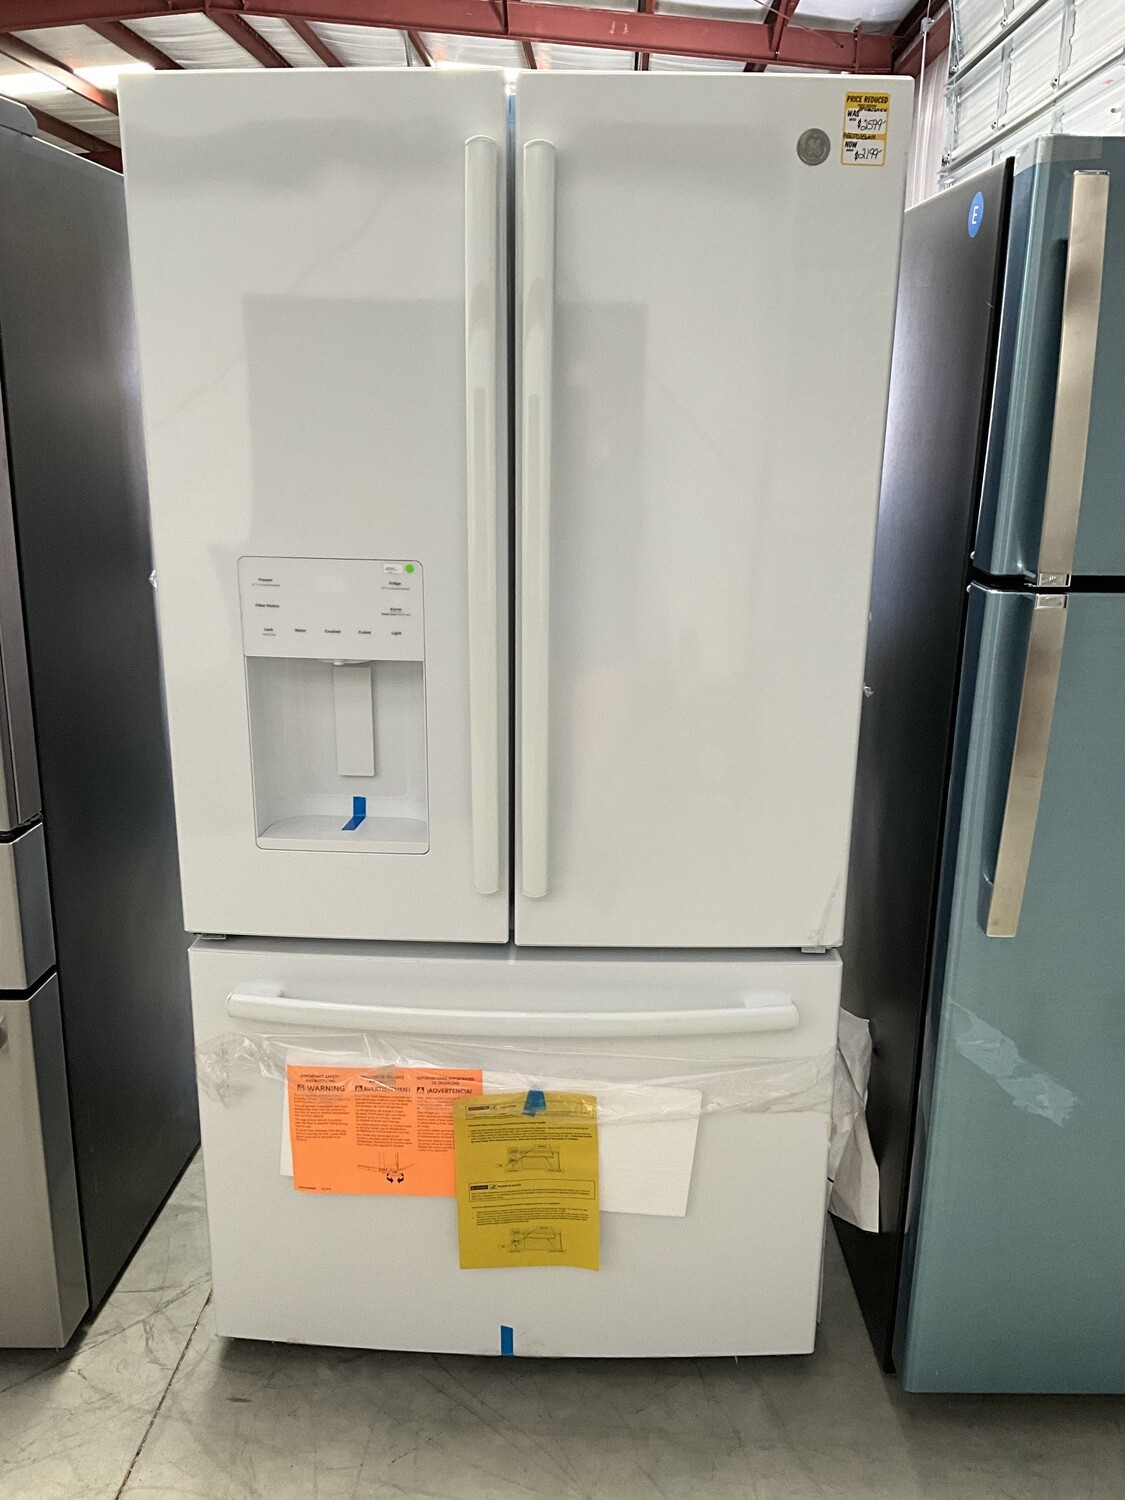 GE 25.6 Cu. Ft. French Door Refrigerator w/ Ice Maker in the door - White  Model GFE26JGMWW. MSRP $2599